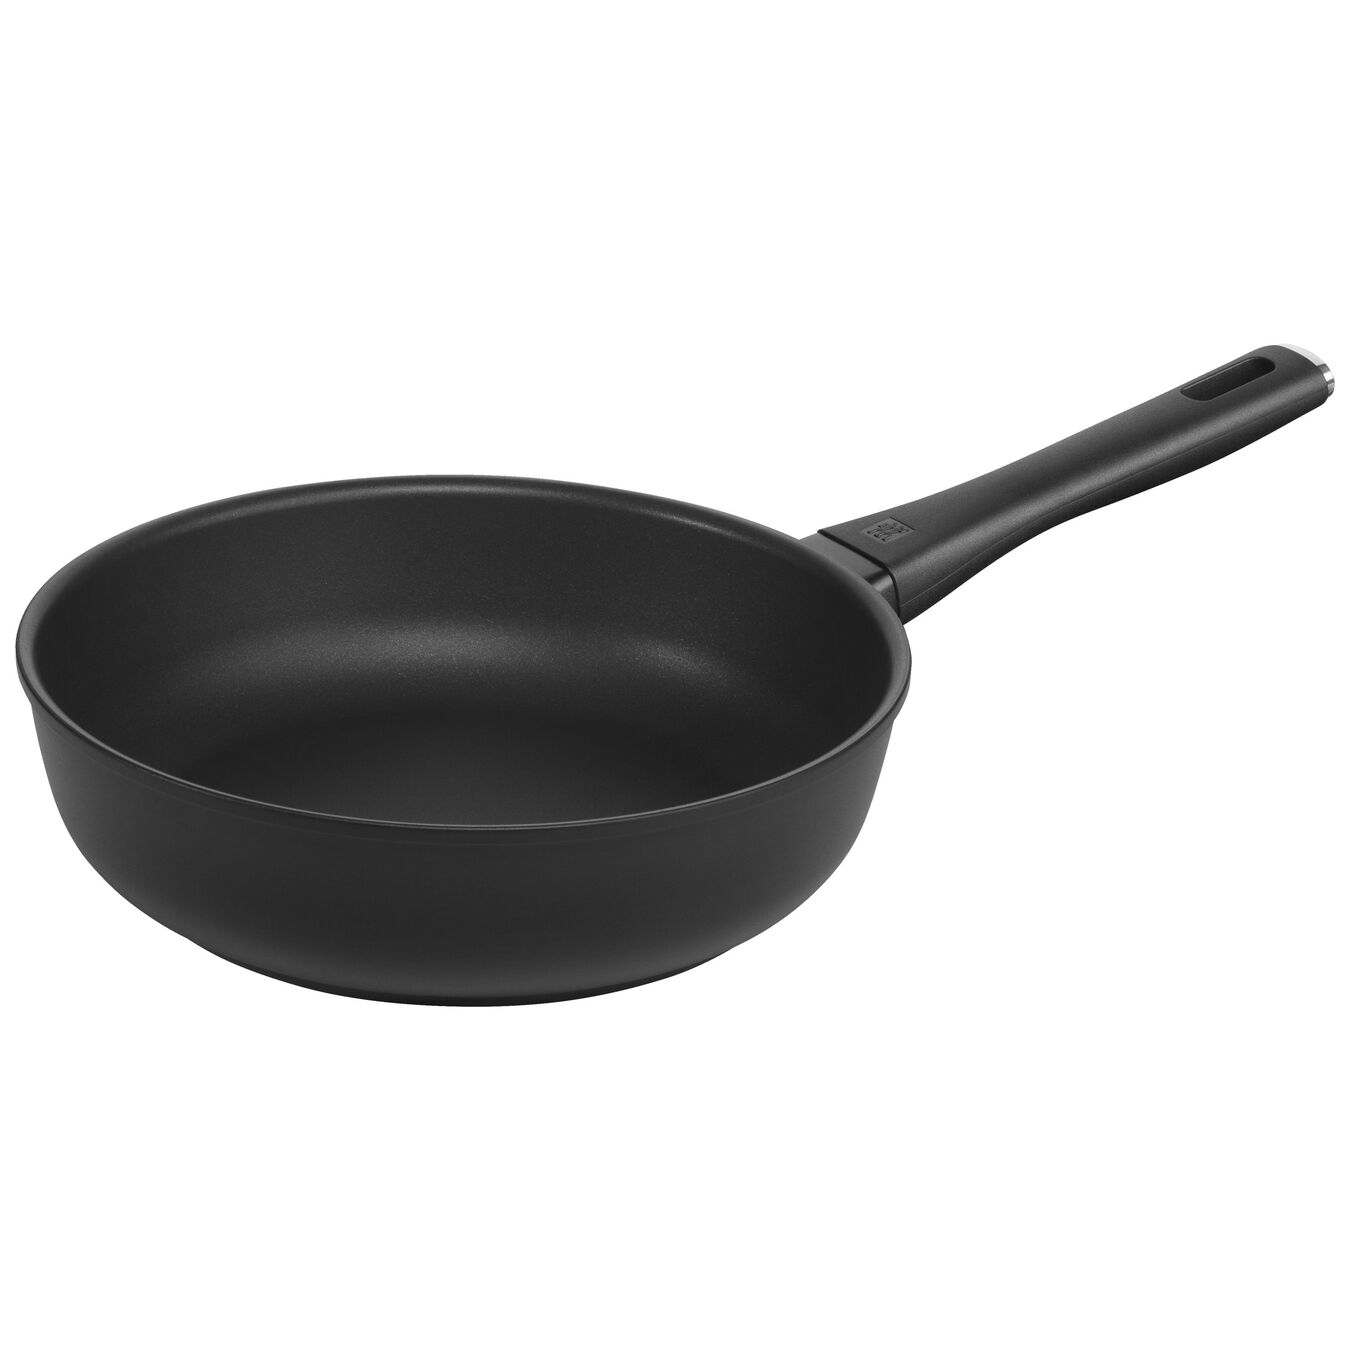 9.5-inch, Non-stick, Aluminum Deep Fry Pan,,large 1